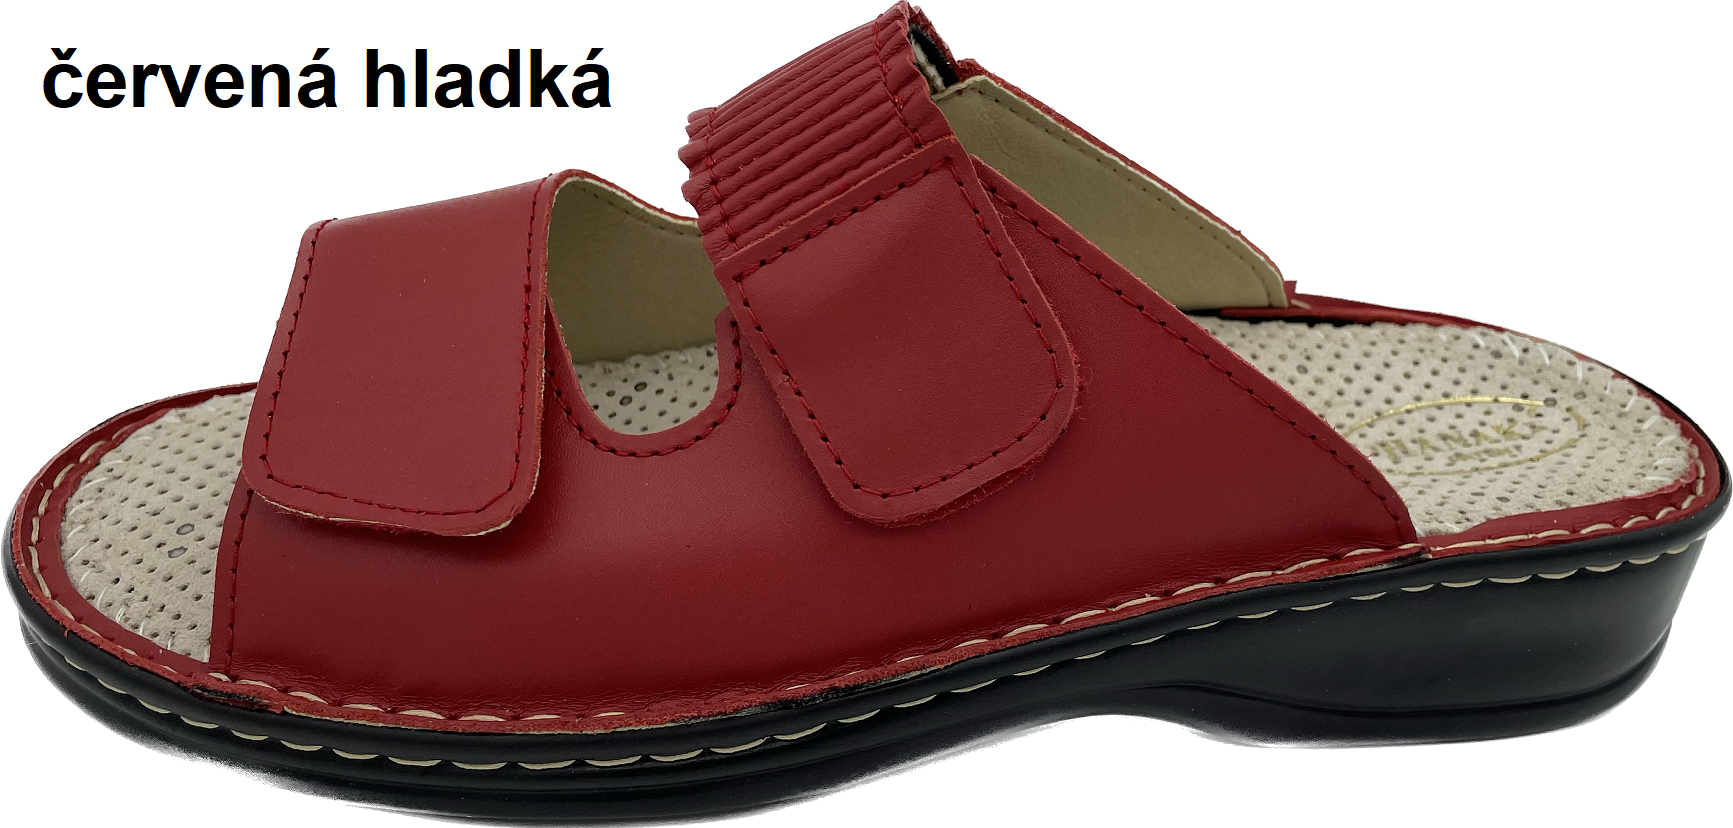 Boty Hanák vzor 304 - černá podešev Barva usně: červená hladká, Velikosti obuvi: 38